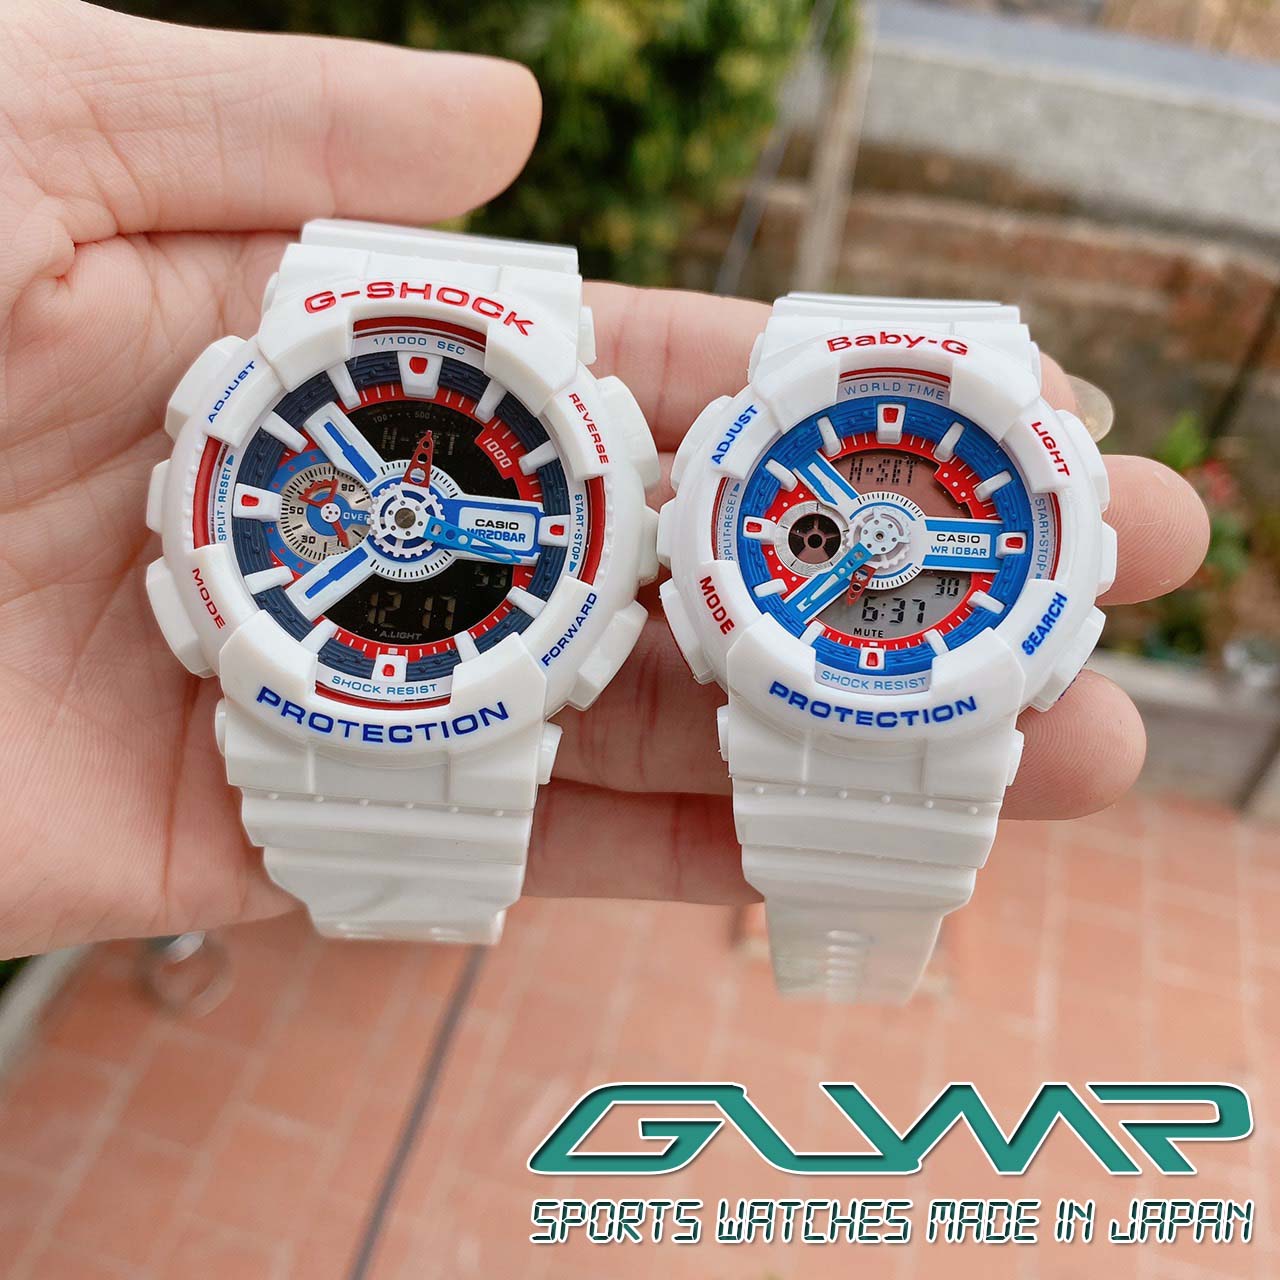 Đồng hồ đeo tay hiệu Lacoste 2020114 giá tốt tại Nguyễn Kim